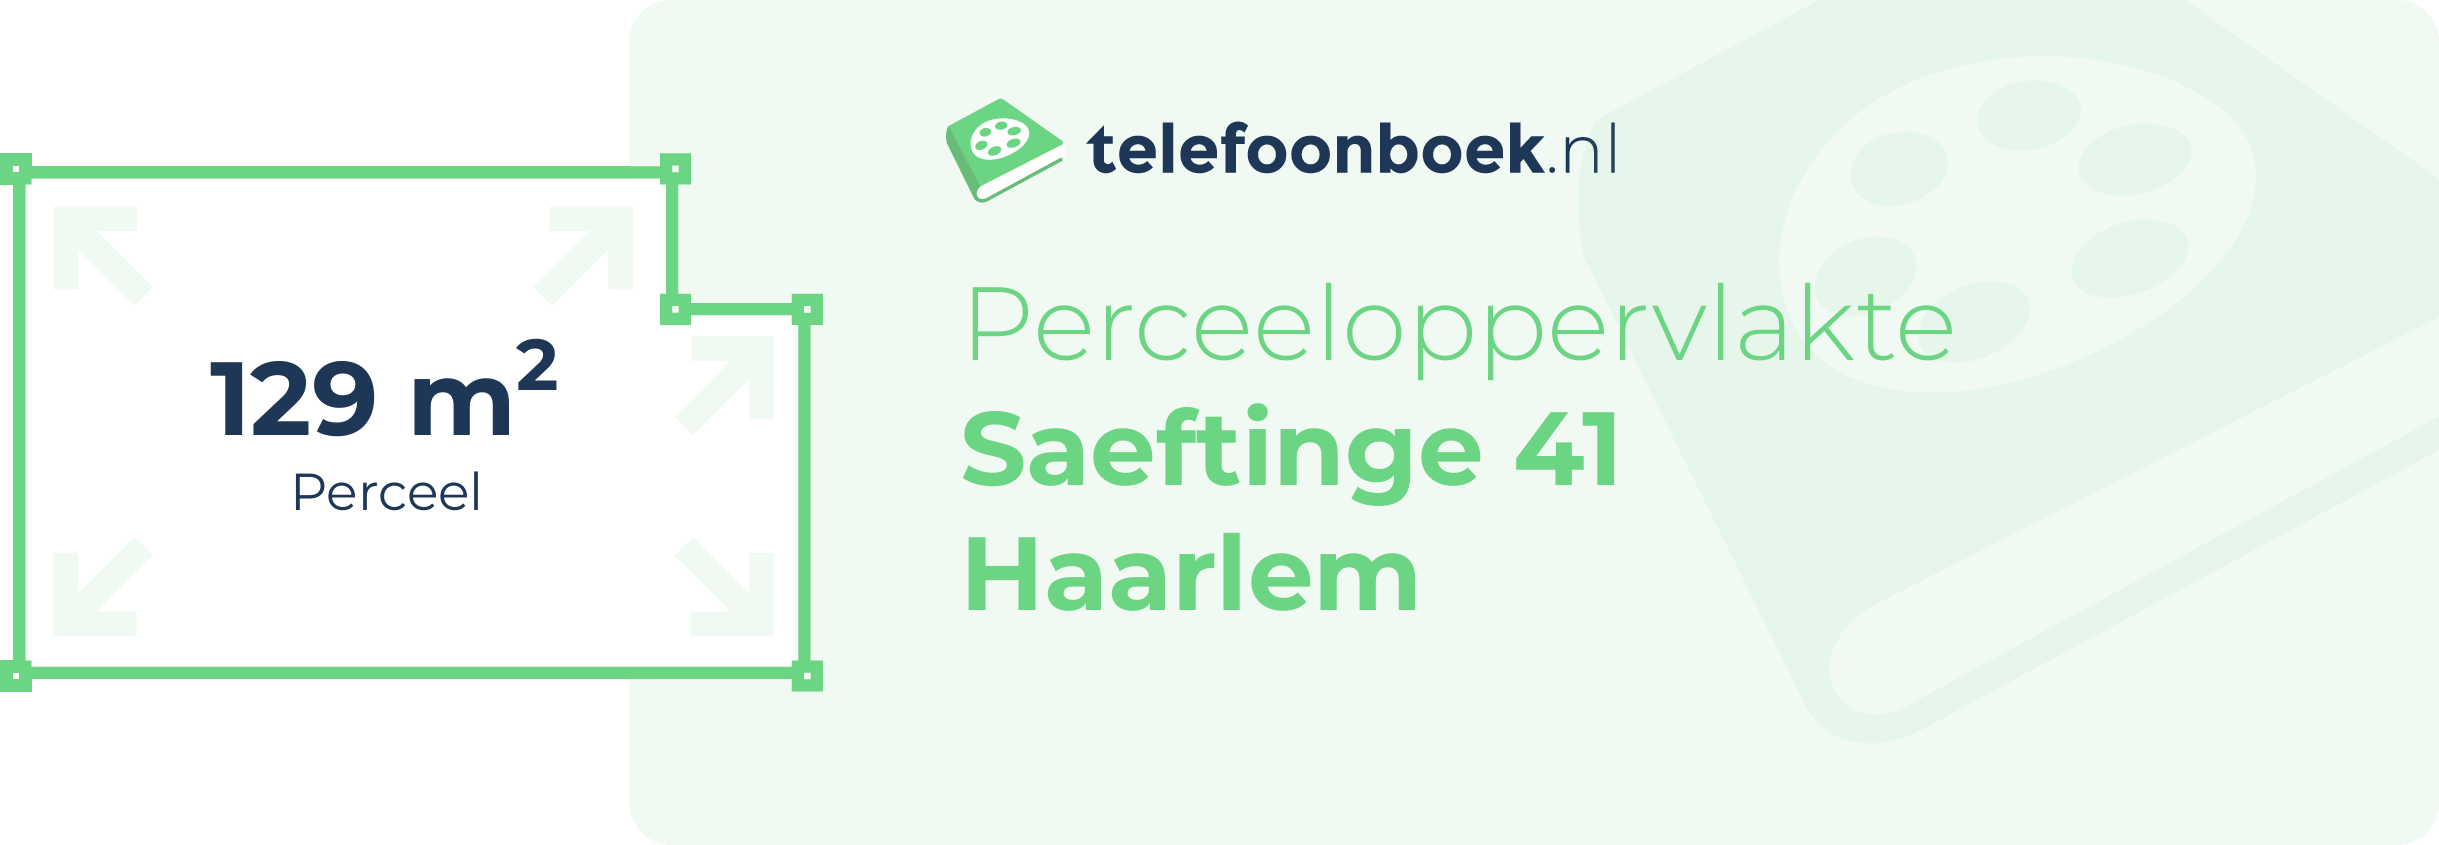 Perceeloppervlakte Saeftinge 41 Haarlem